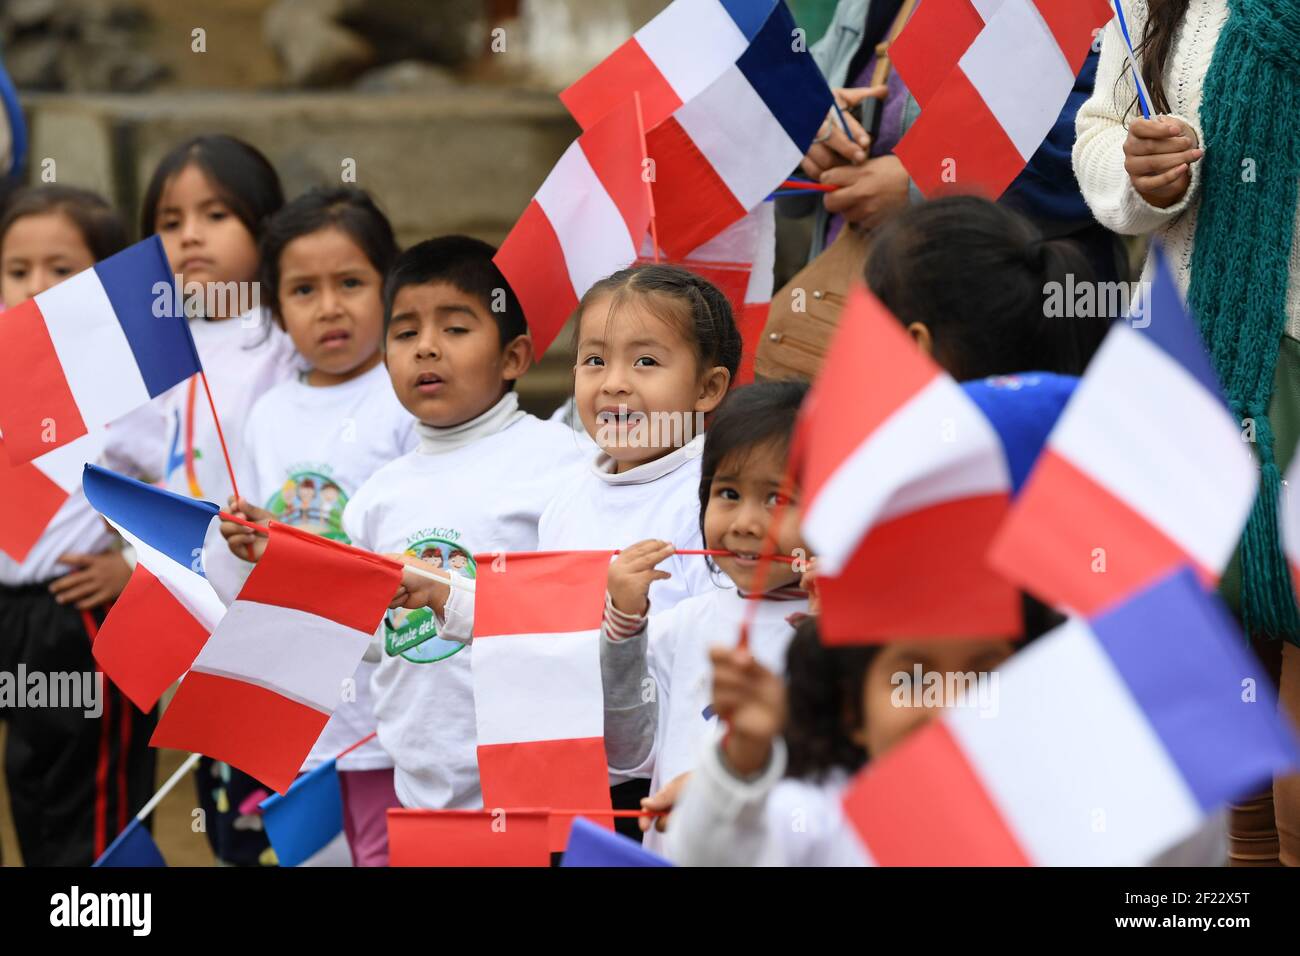 Peruanische Kinder während des Besuchs der französischen Delegation Paris 2024 Kandidatur in Collique Slum für das Projekt "Peru, Fröngentum, Solidarität" , Lima, September 11, 2017, Foto Philippe Millereau / KMSP / PARIS 2024 / DPPI Stockfoto